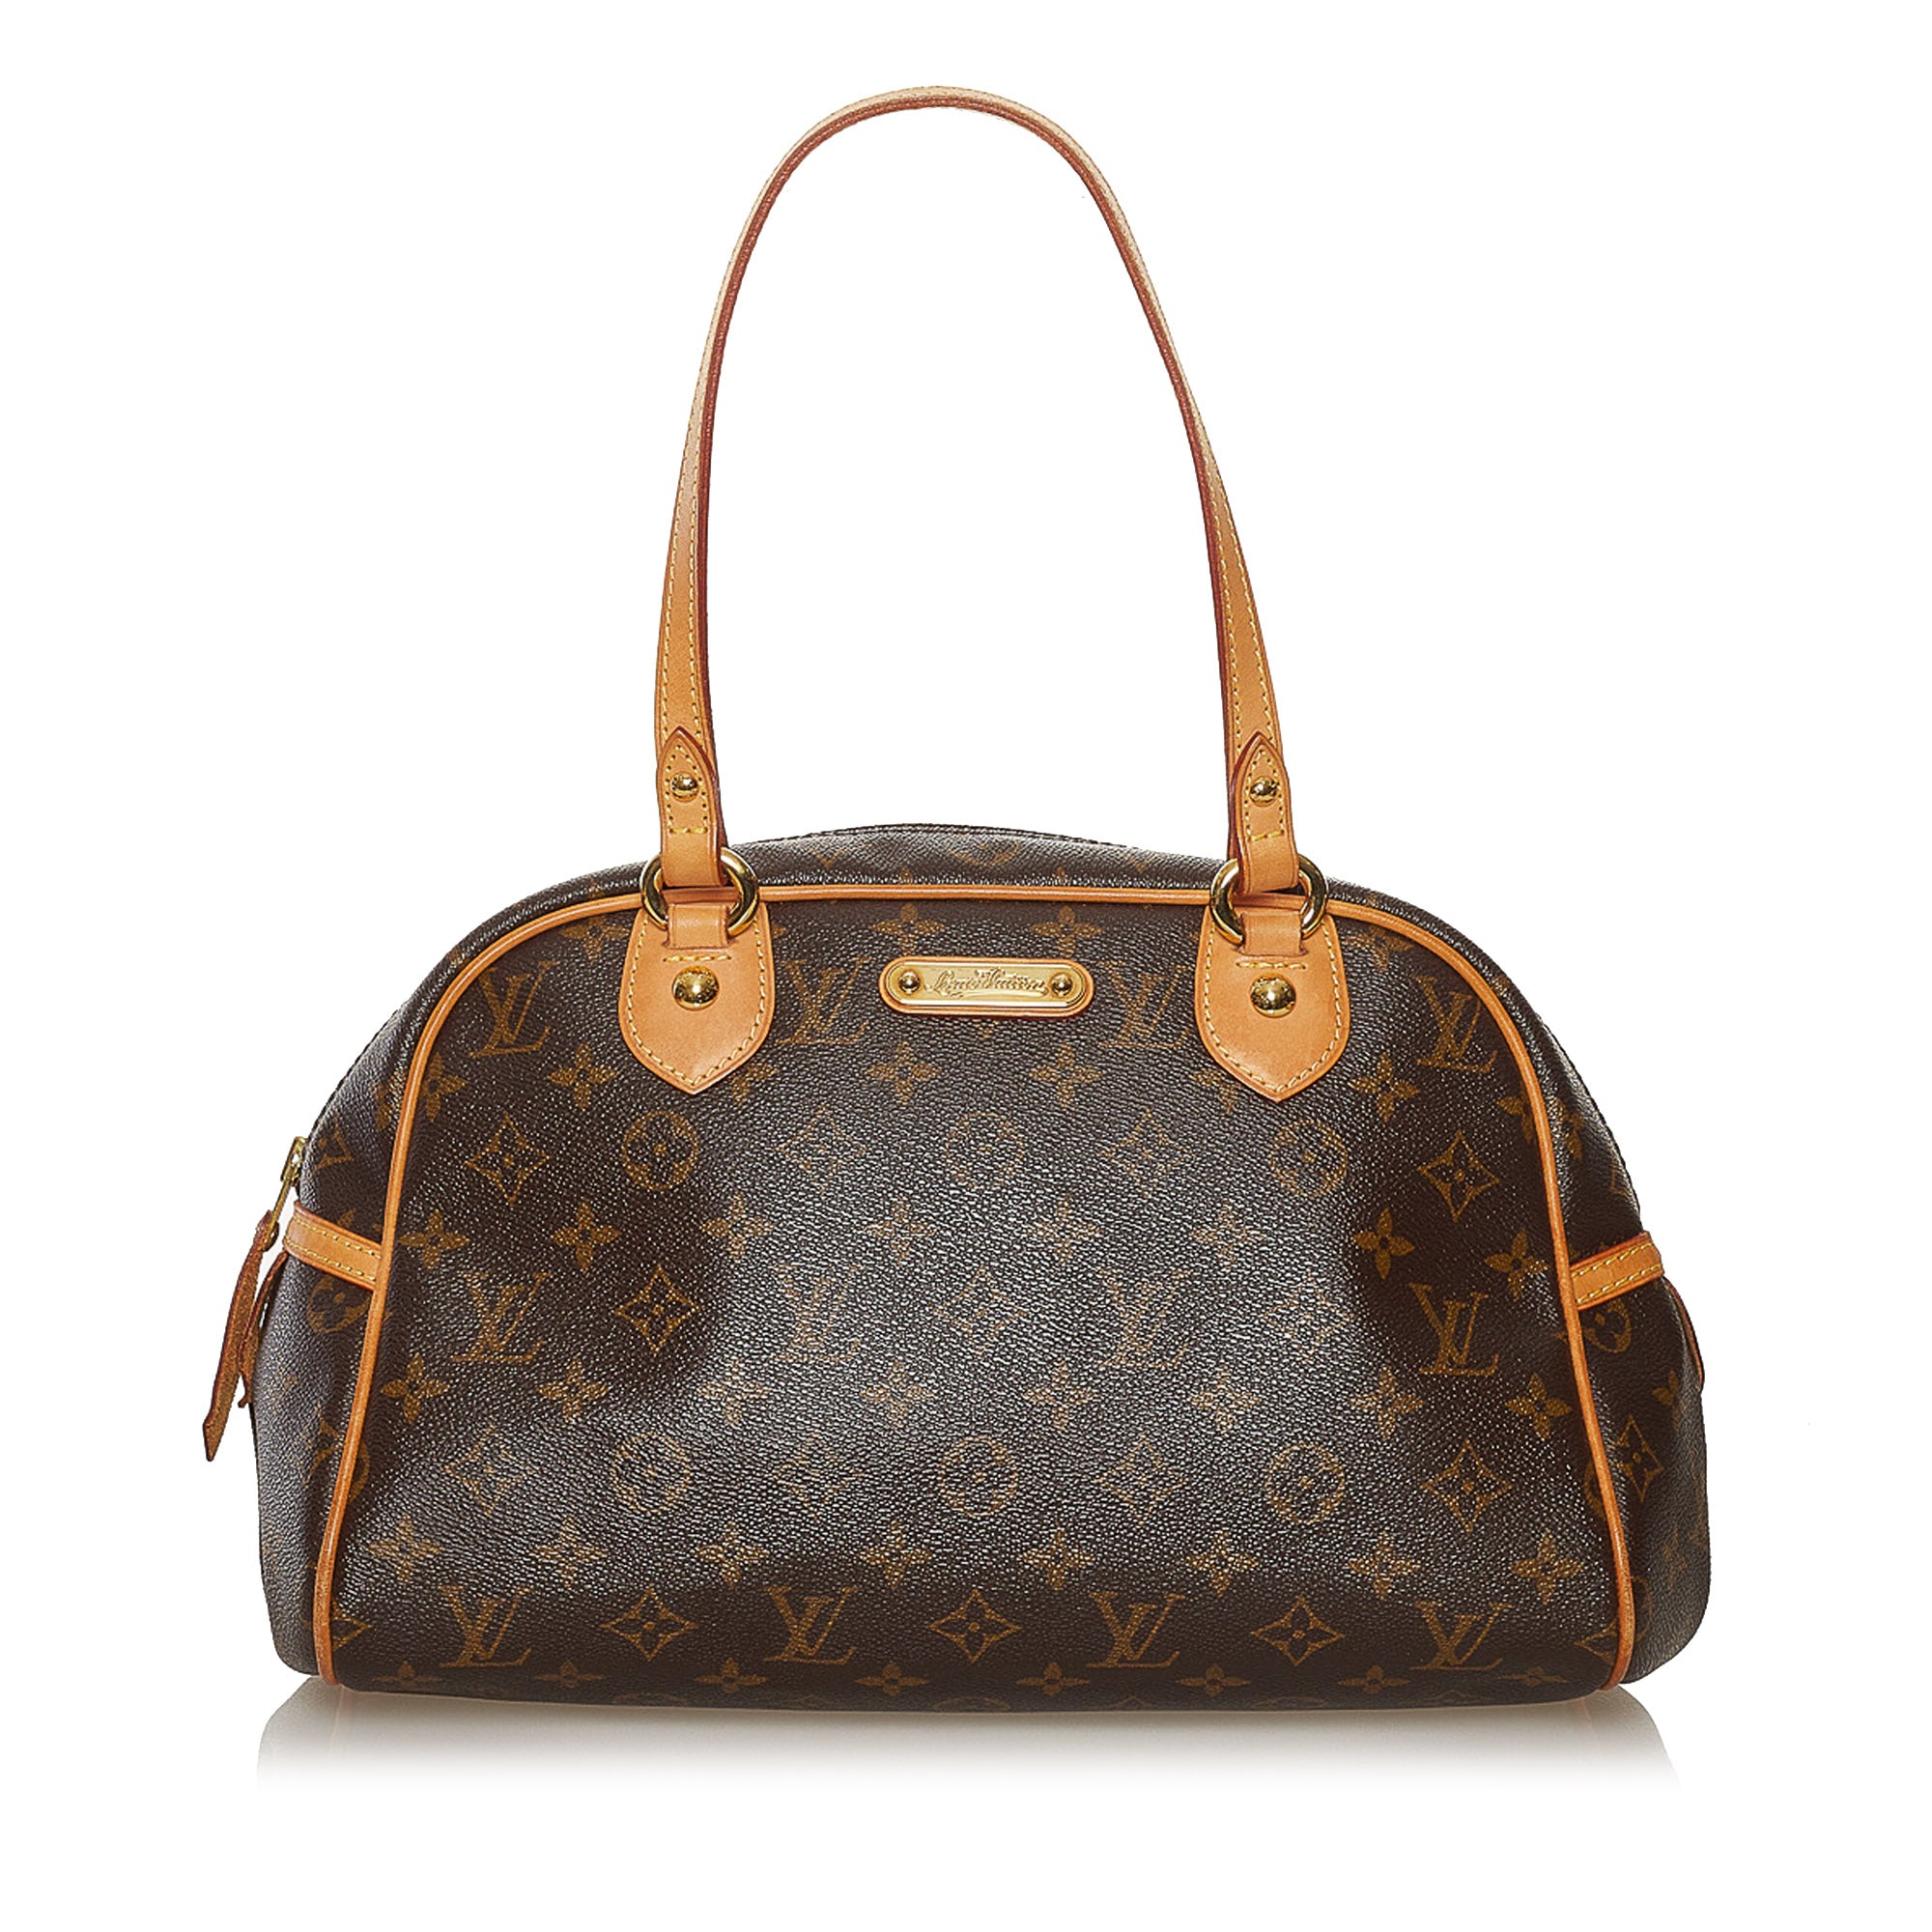 Louis Vuitton Virgil Abloh Utility Front Back Shoulder Bag